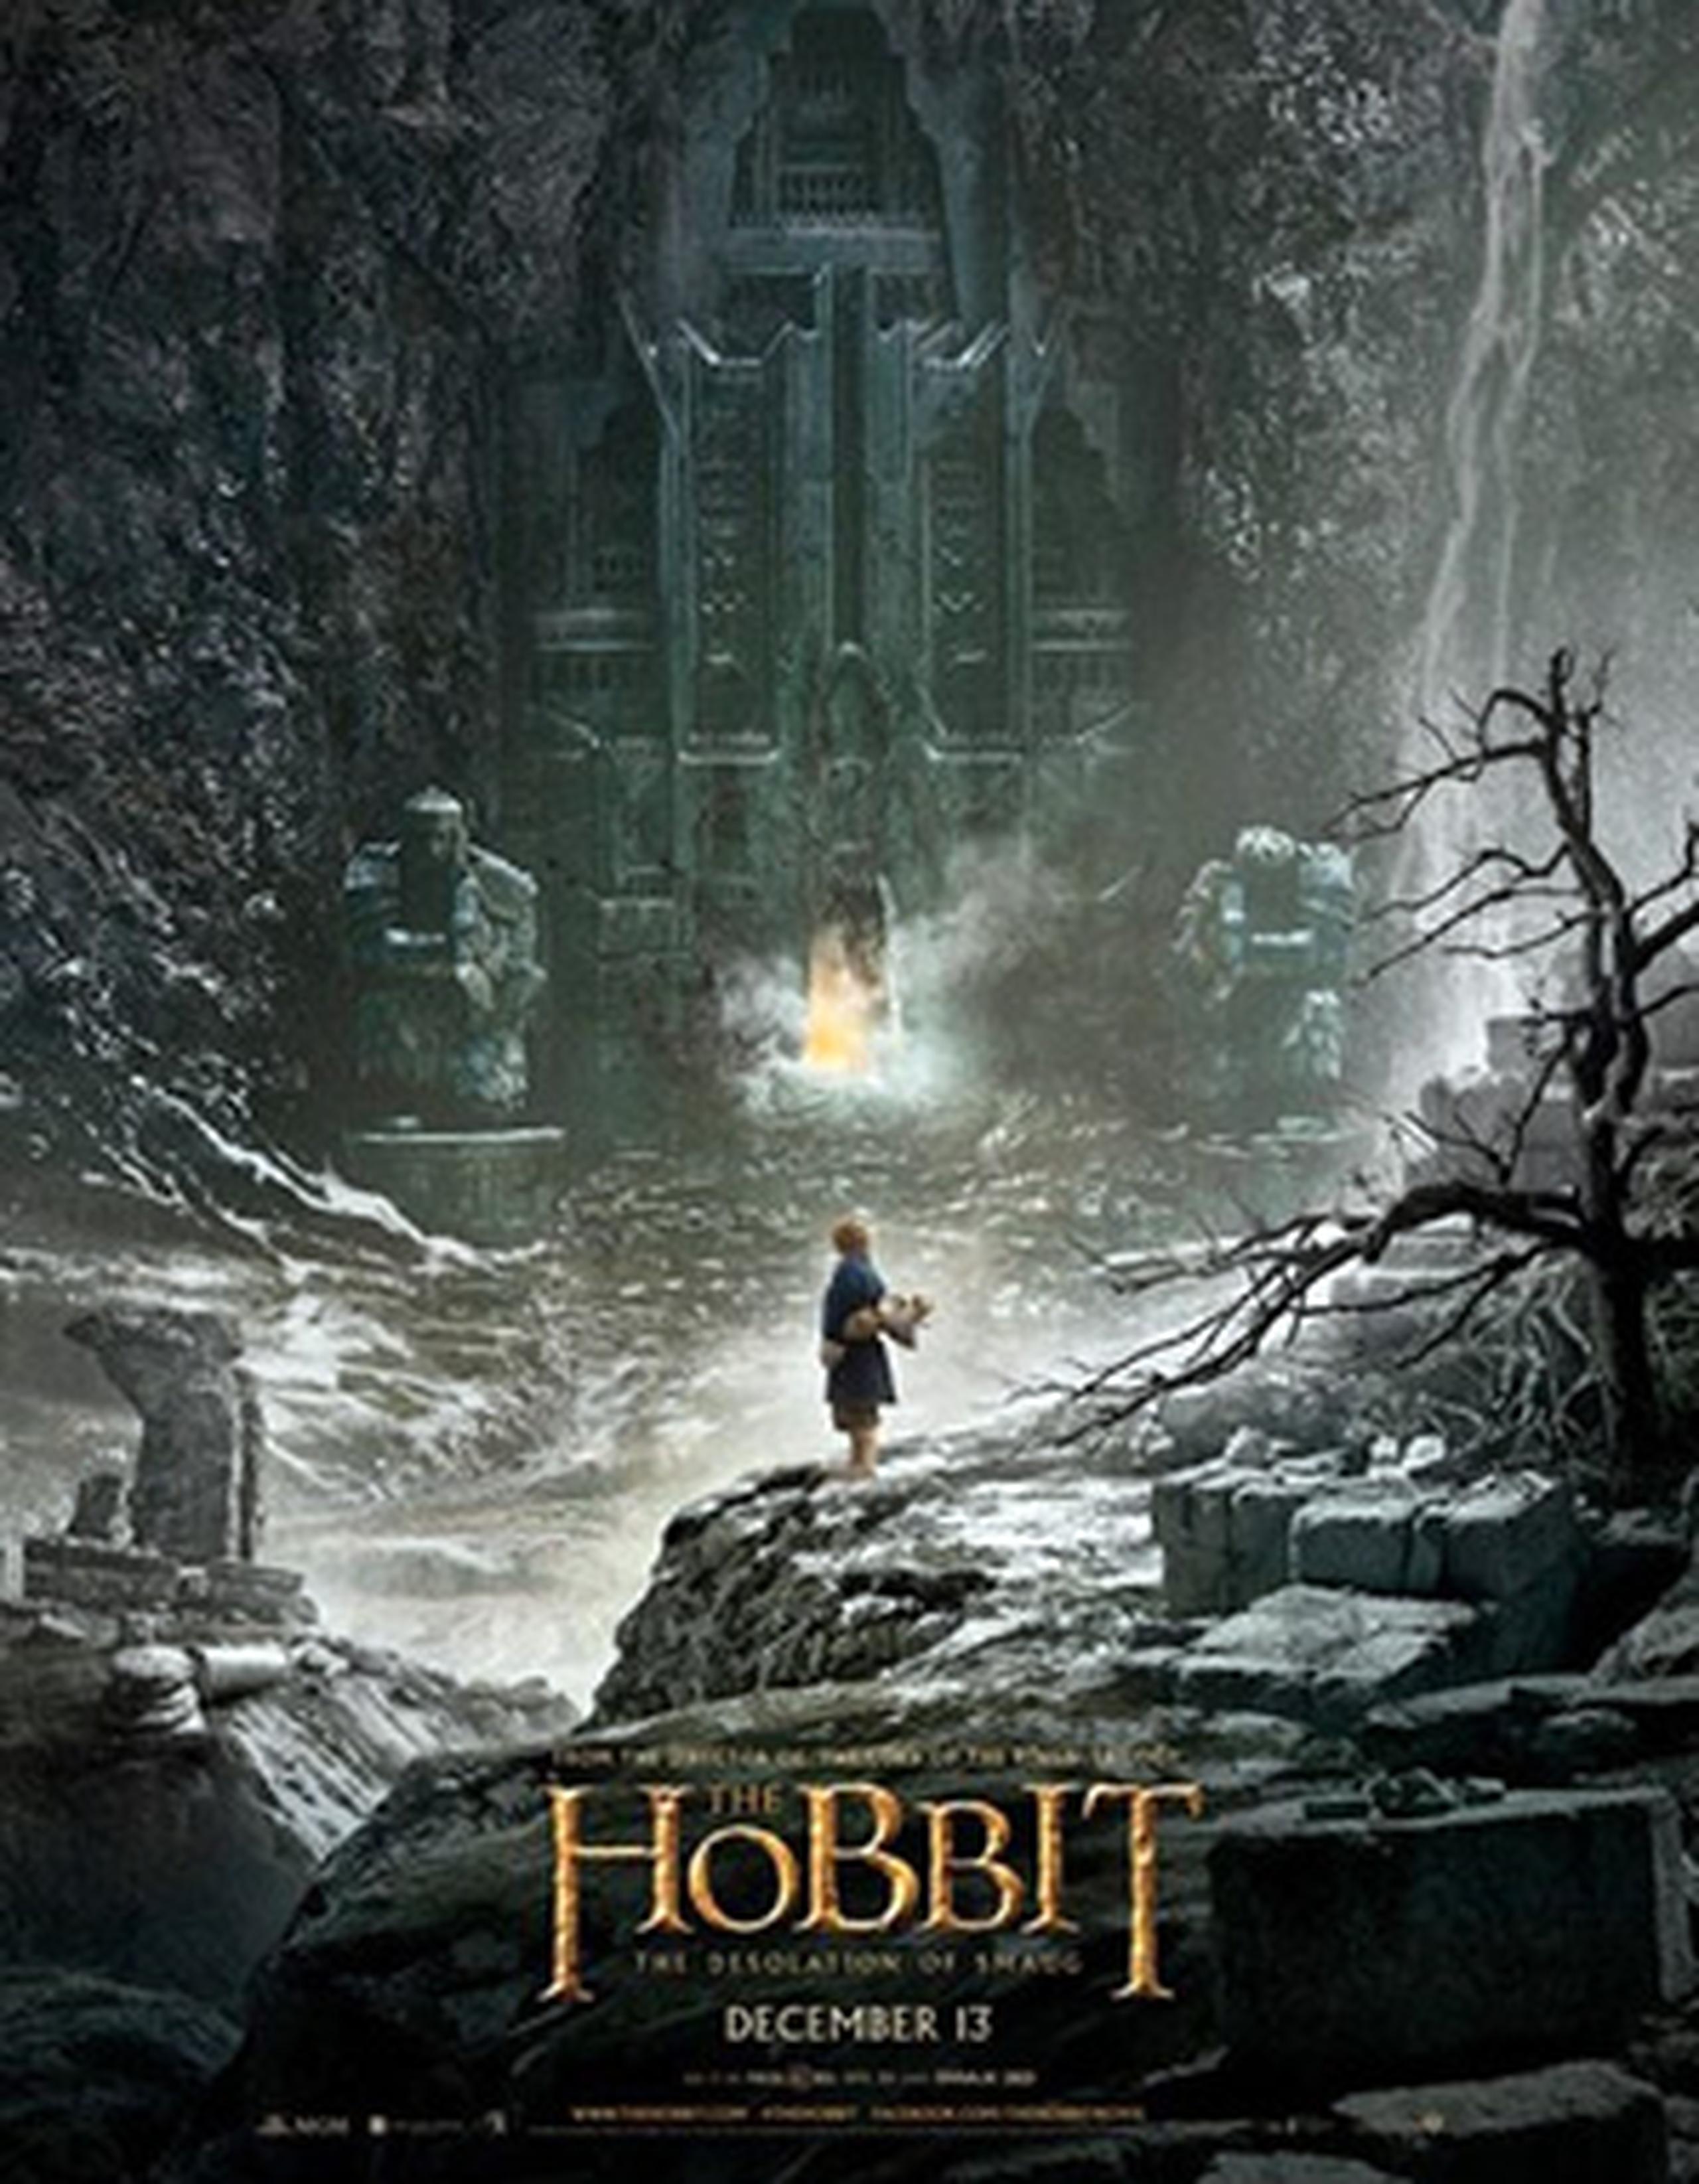 Este martes, Warner Bros. lanzará el primer avance de "El Hobbit: The Desolation of Smaug".